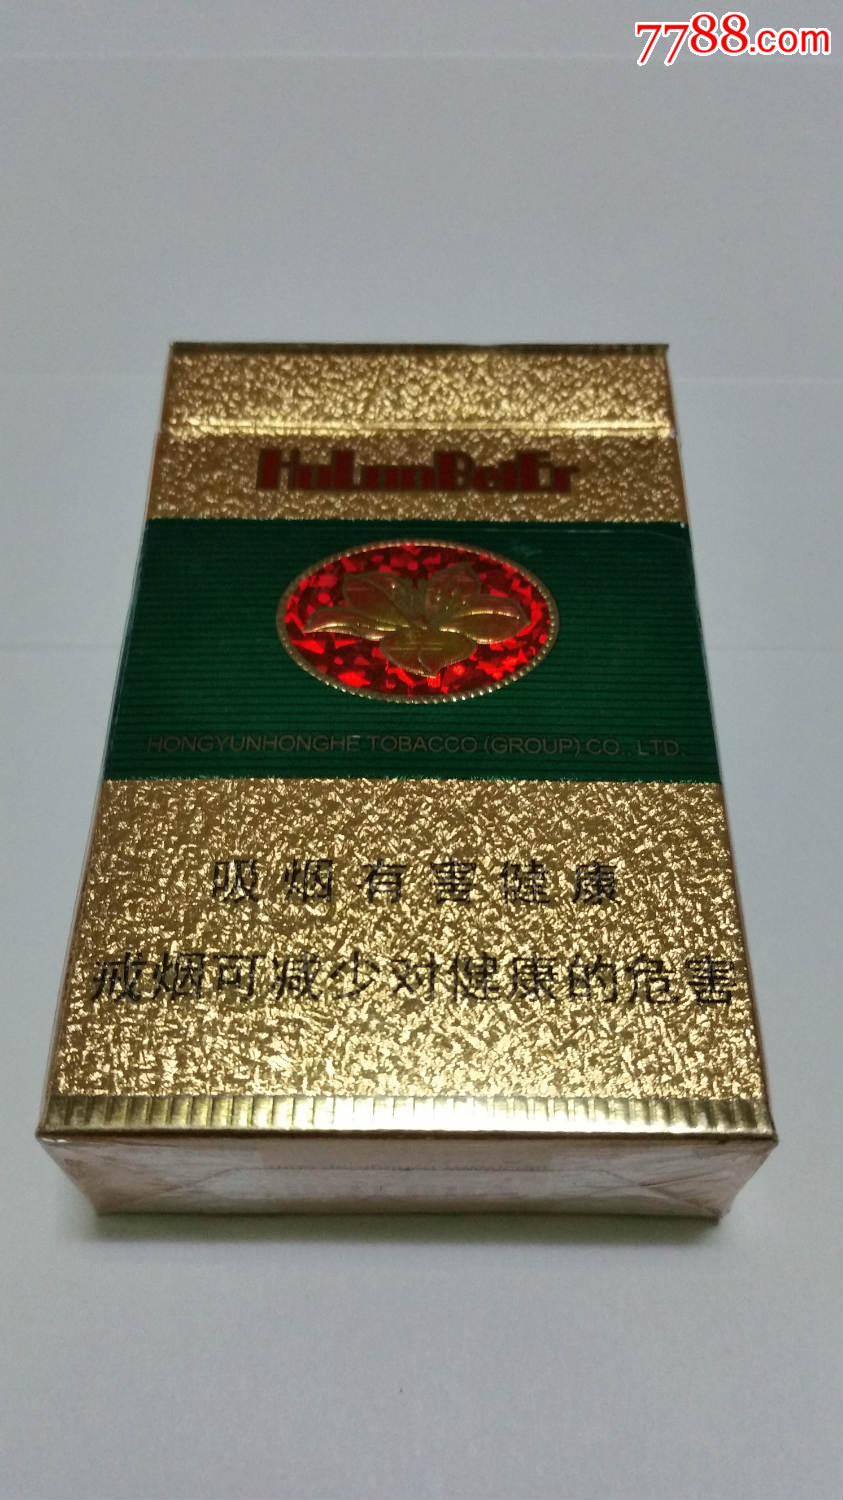 云烟呼伦贝尔-价格:2.0000元-se48733121-烟标/烟盒